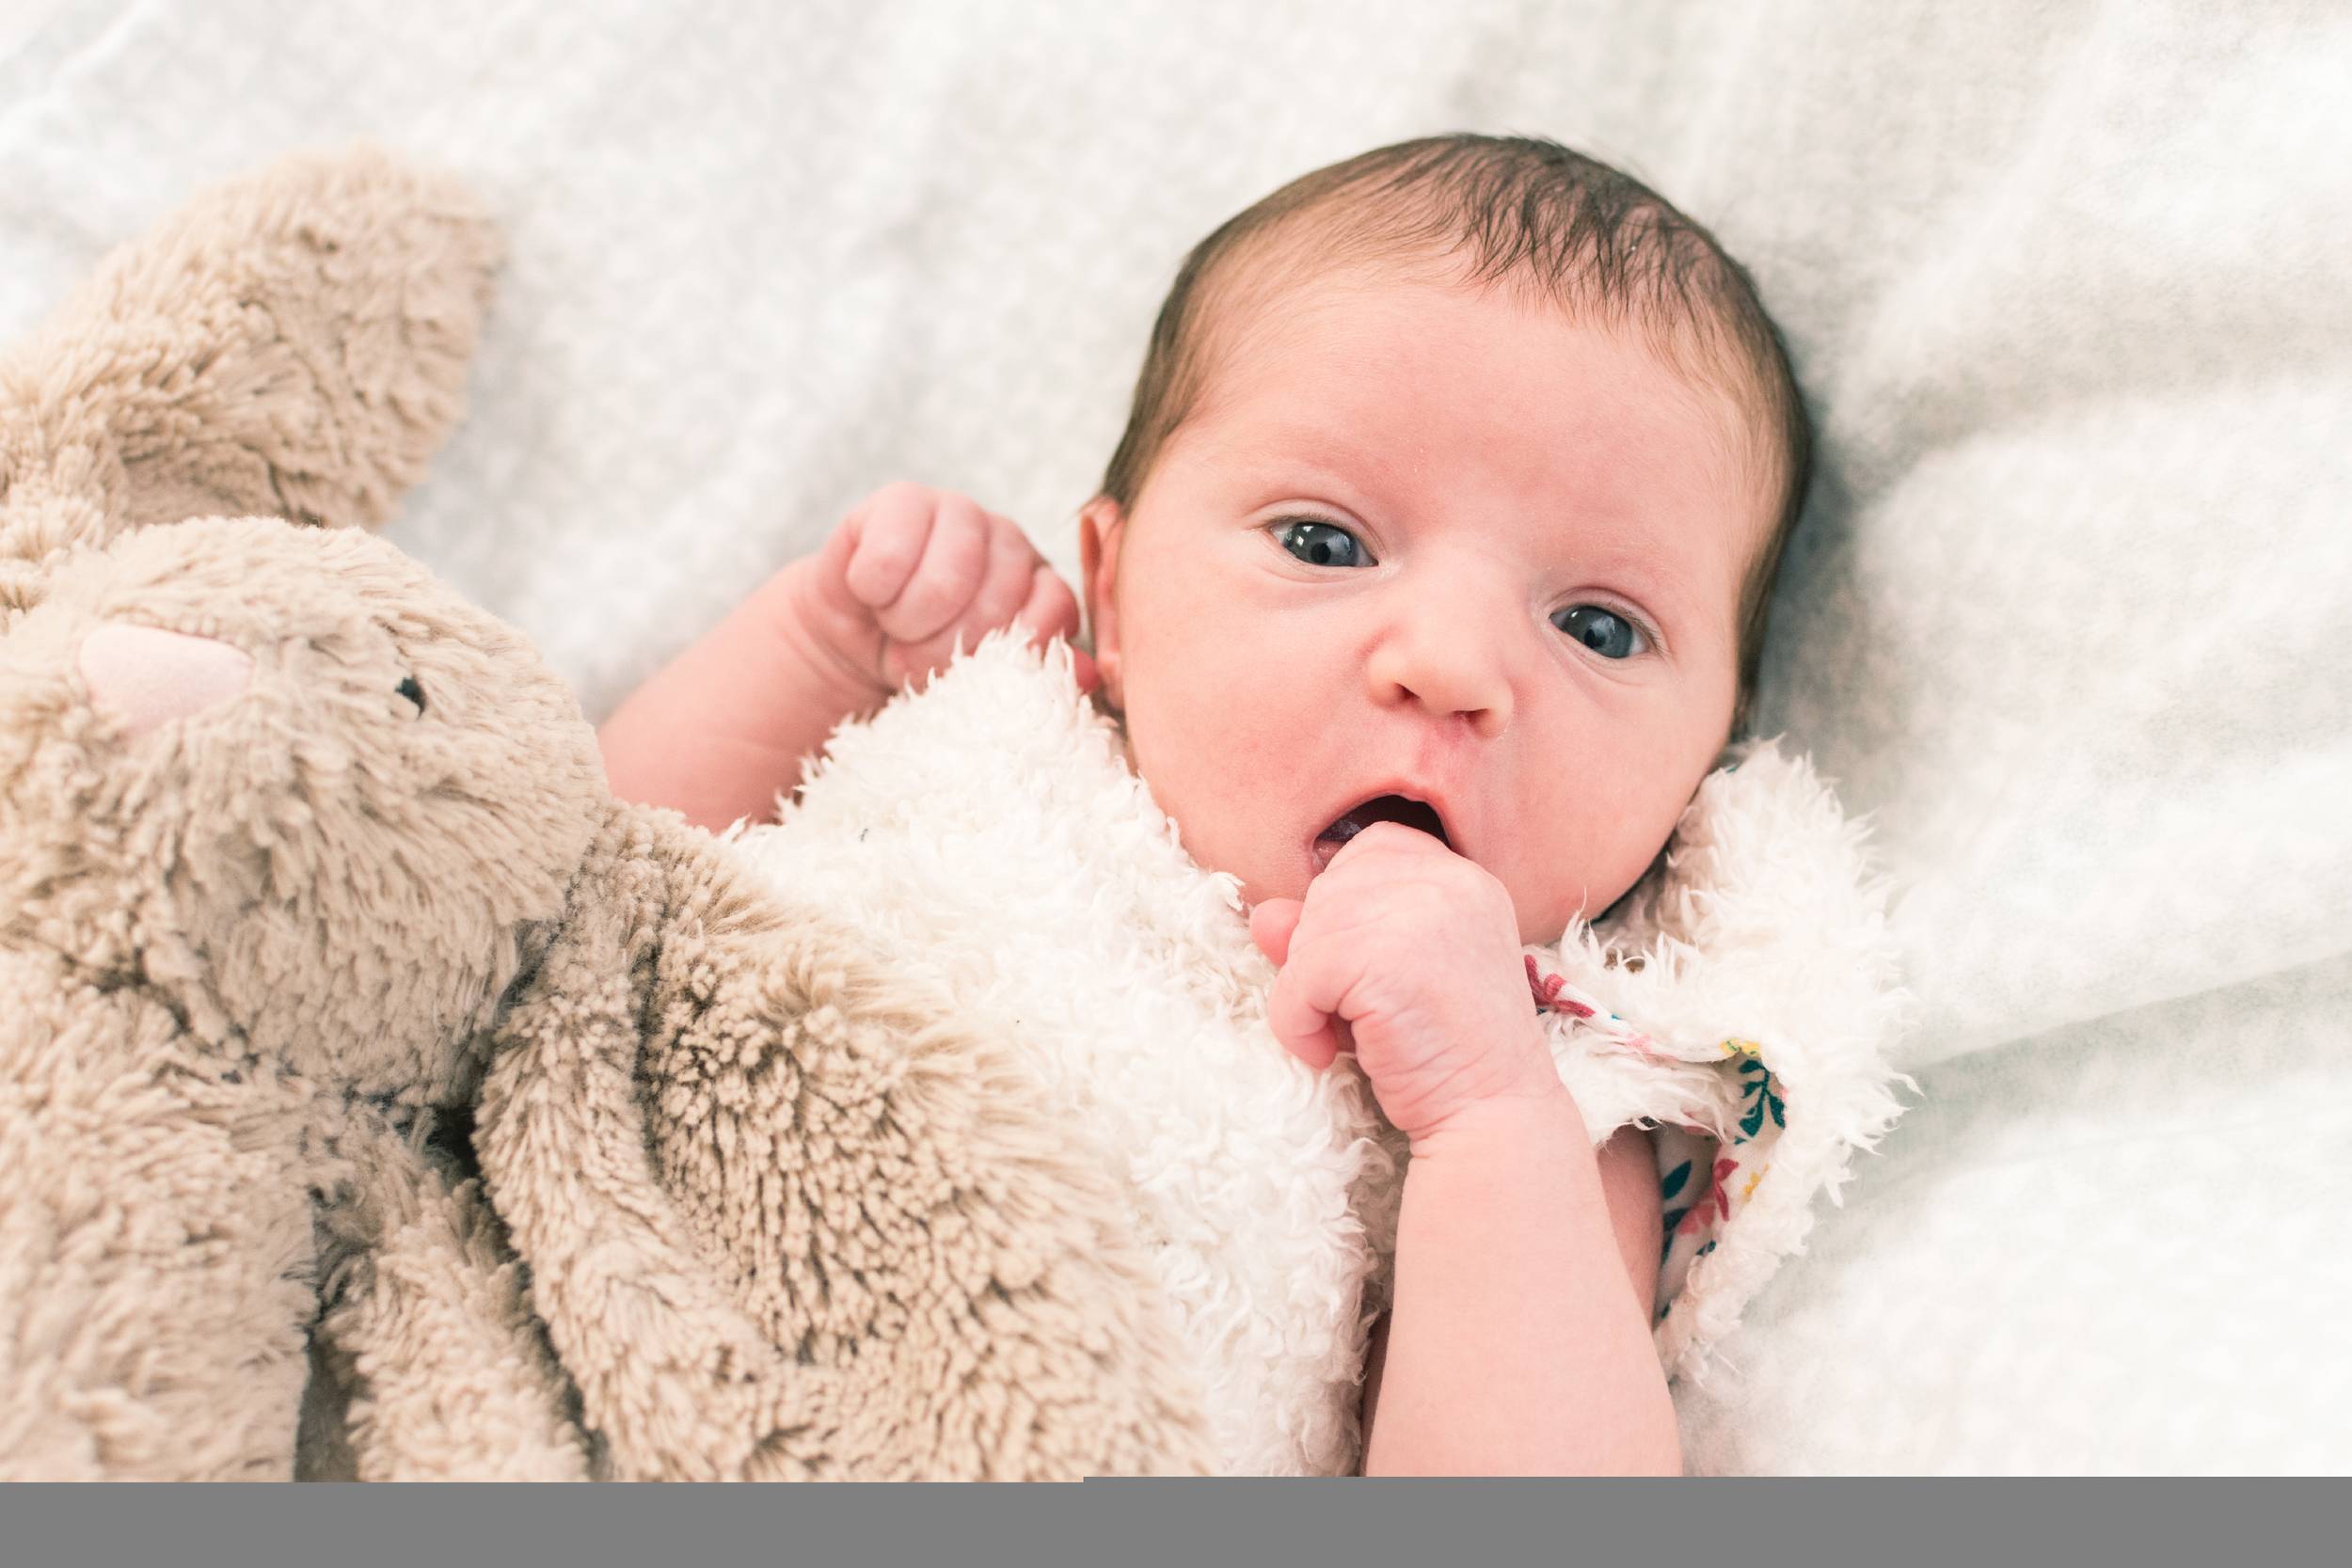 Happix-fotograaf-Joanna-Newborn-_-Baby-fotografie-006_kivnmalvr7m.jpg